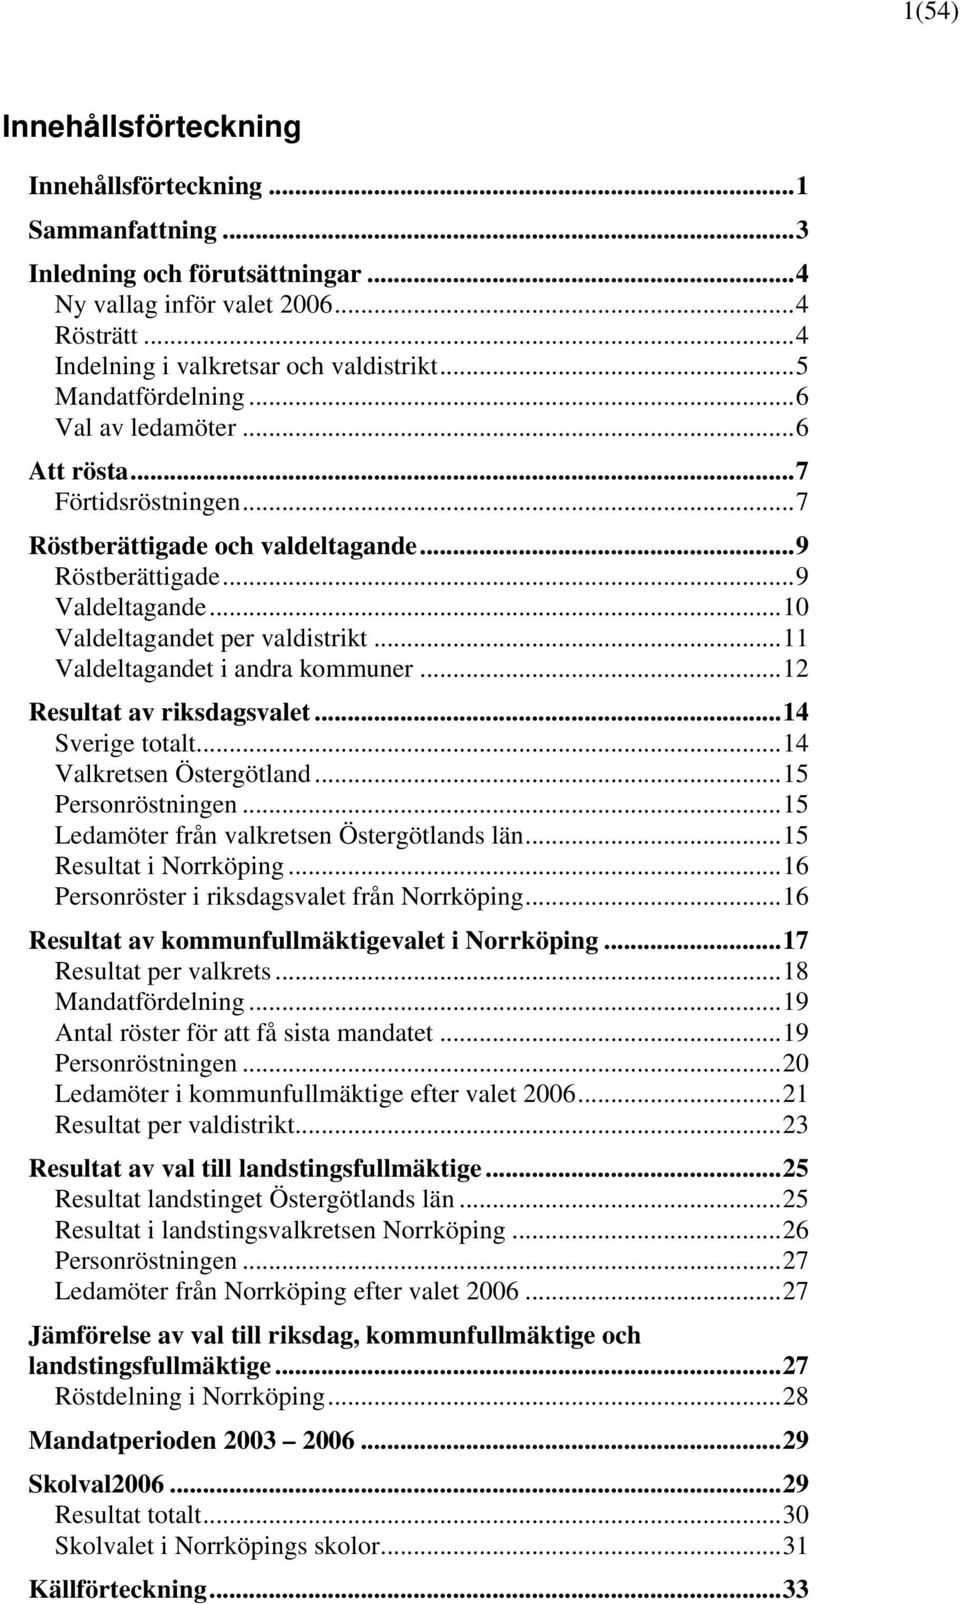 ..11 Valdeltagandet i andra kommuner...12 Resultat av riksdagsvalet...14 Sverige totalt...14 Valkretsen Östergötland...15 Personröstningen...15 Ledamöter från valkretsen Östergötlands län.